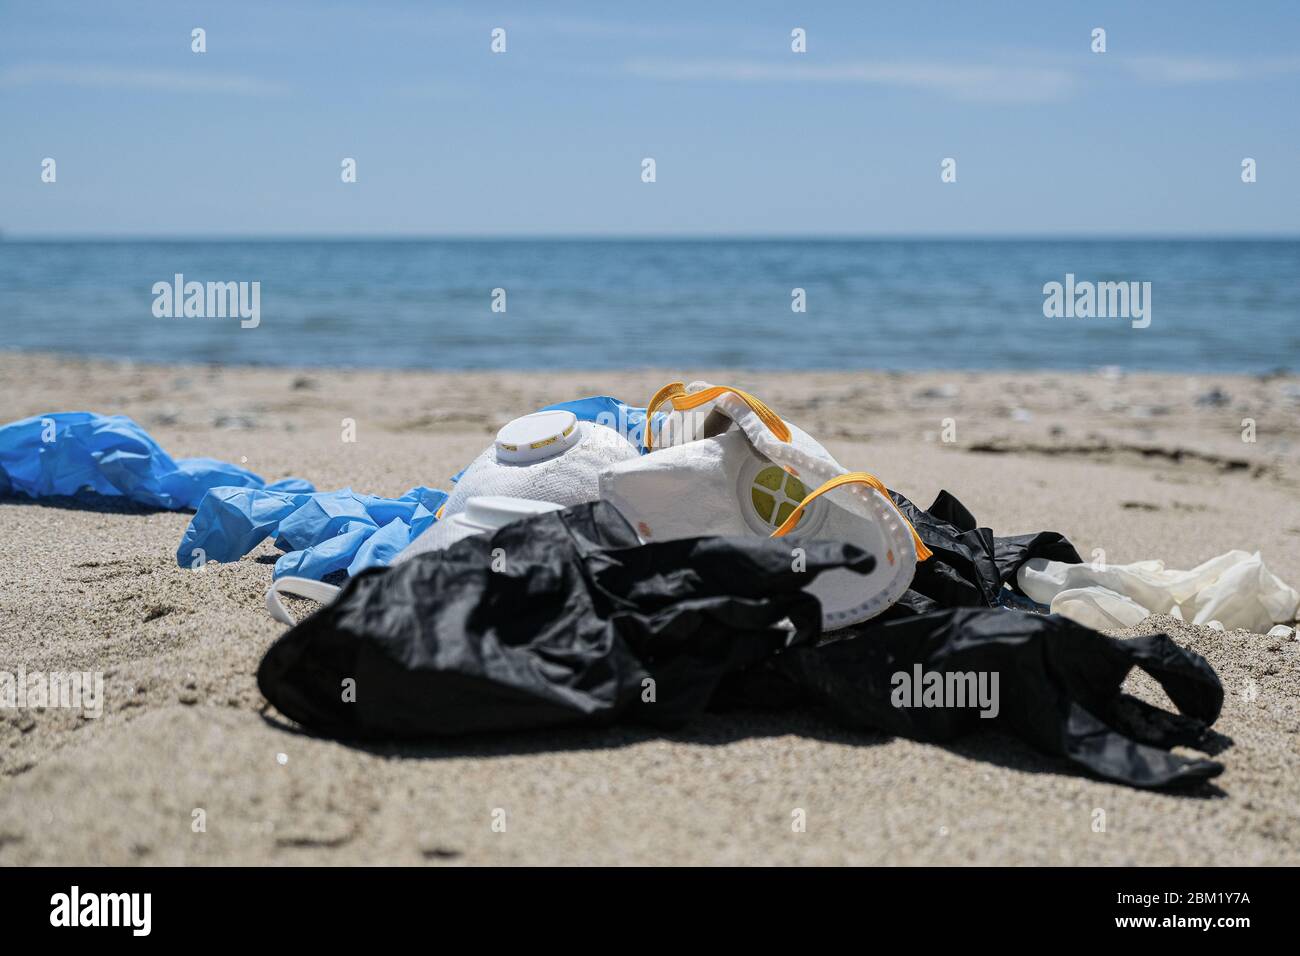 Maschera virus e guanti di plastica spazzatura sulla costa del mare, inquinamento da coronavirus Foto Stock